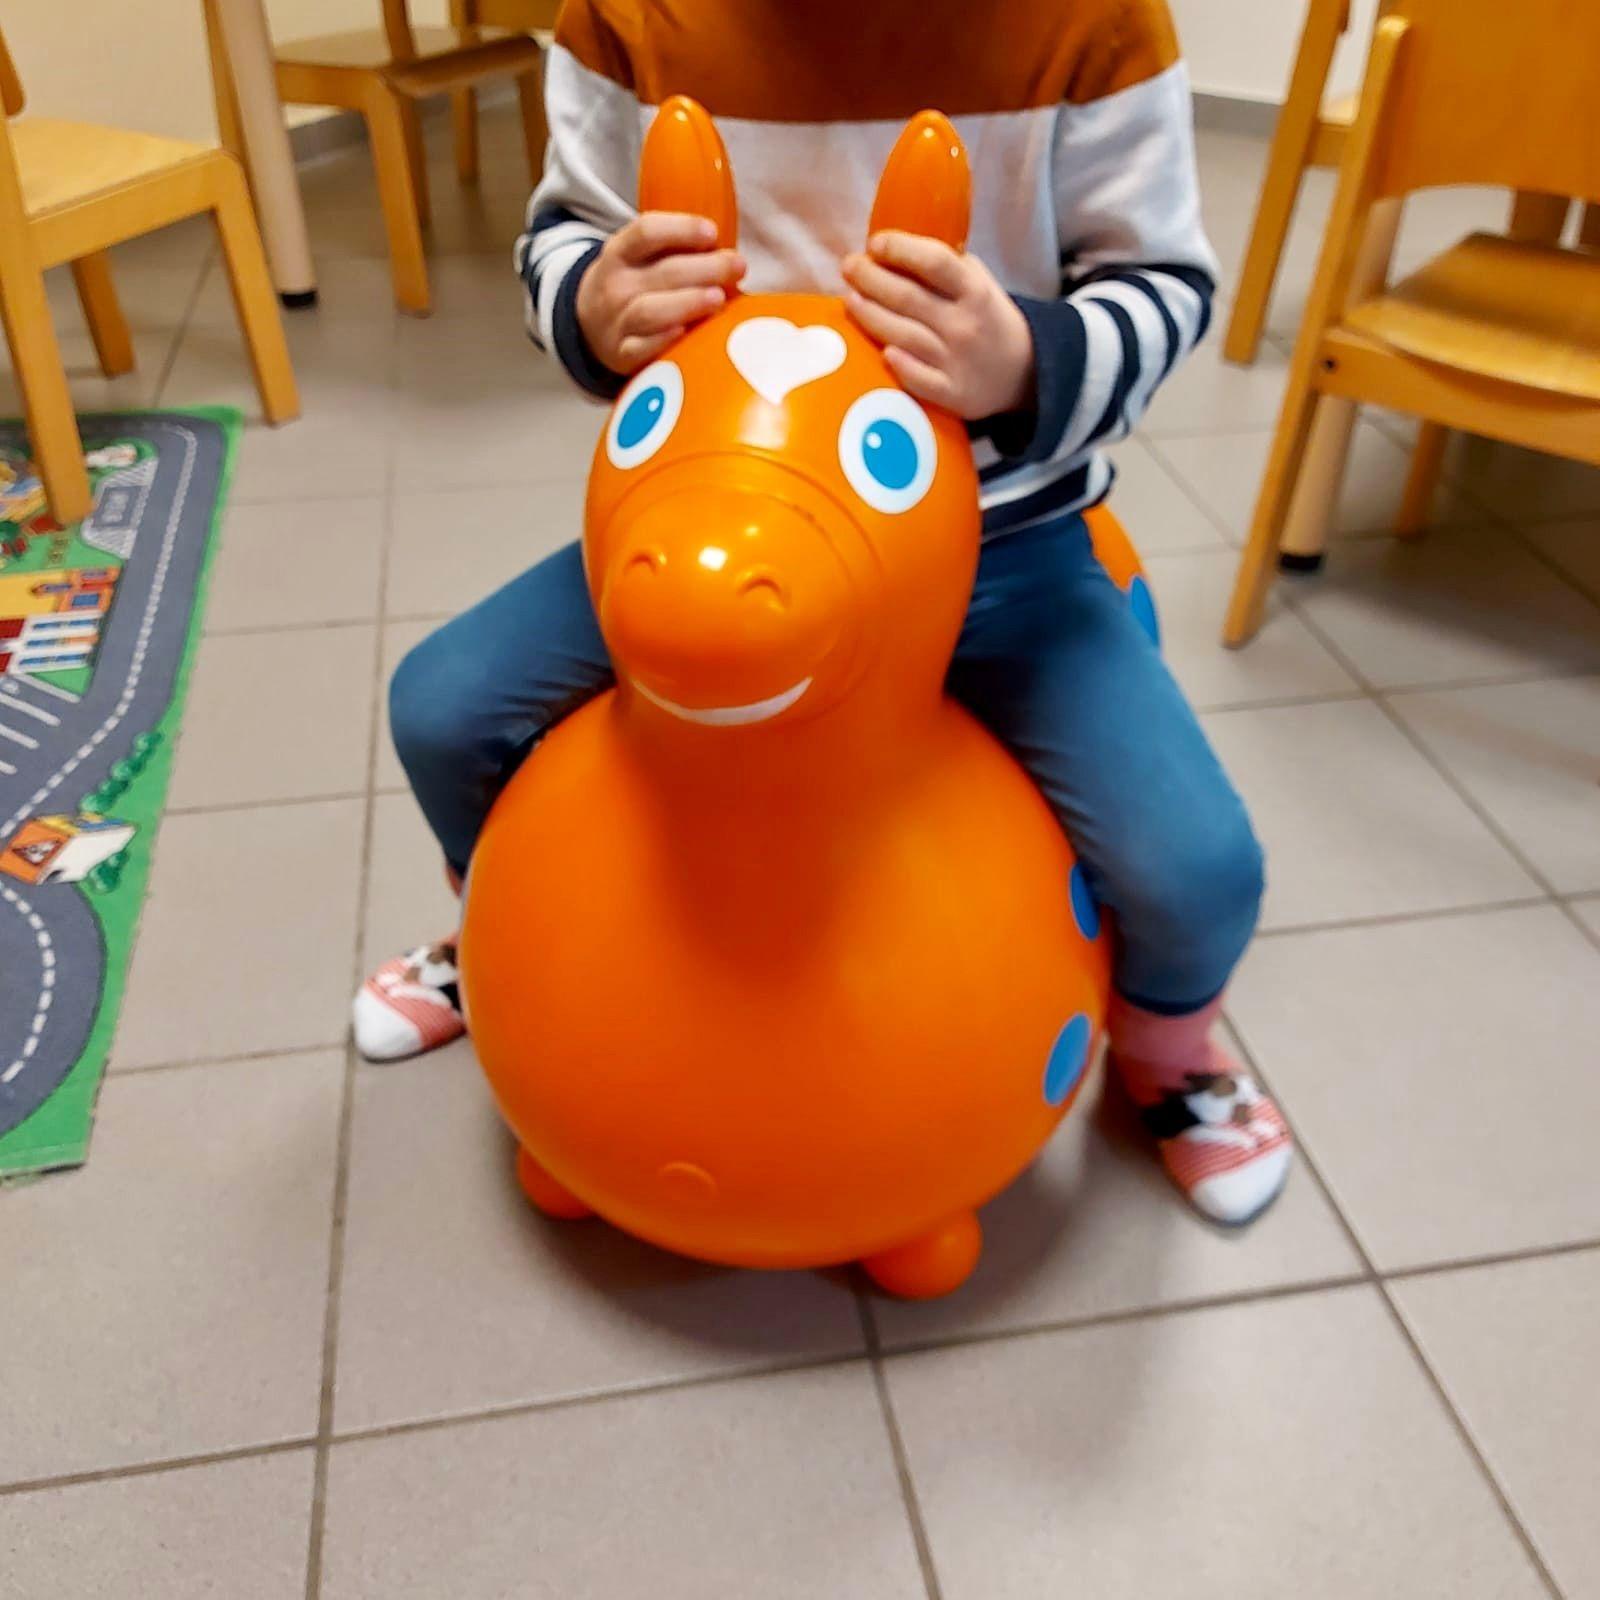 Auf dem Foto sieht man ein Kind, das auf einem roten Gummi-Hüpfpferd sitzt. Der Kopf des Kindes ist auf dem Bild nicht zu sehen.